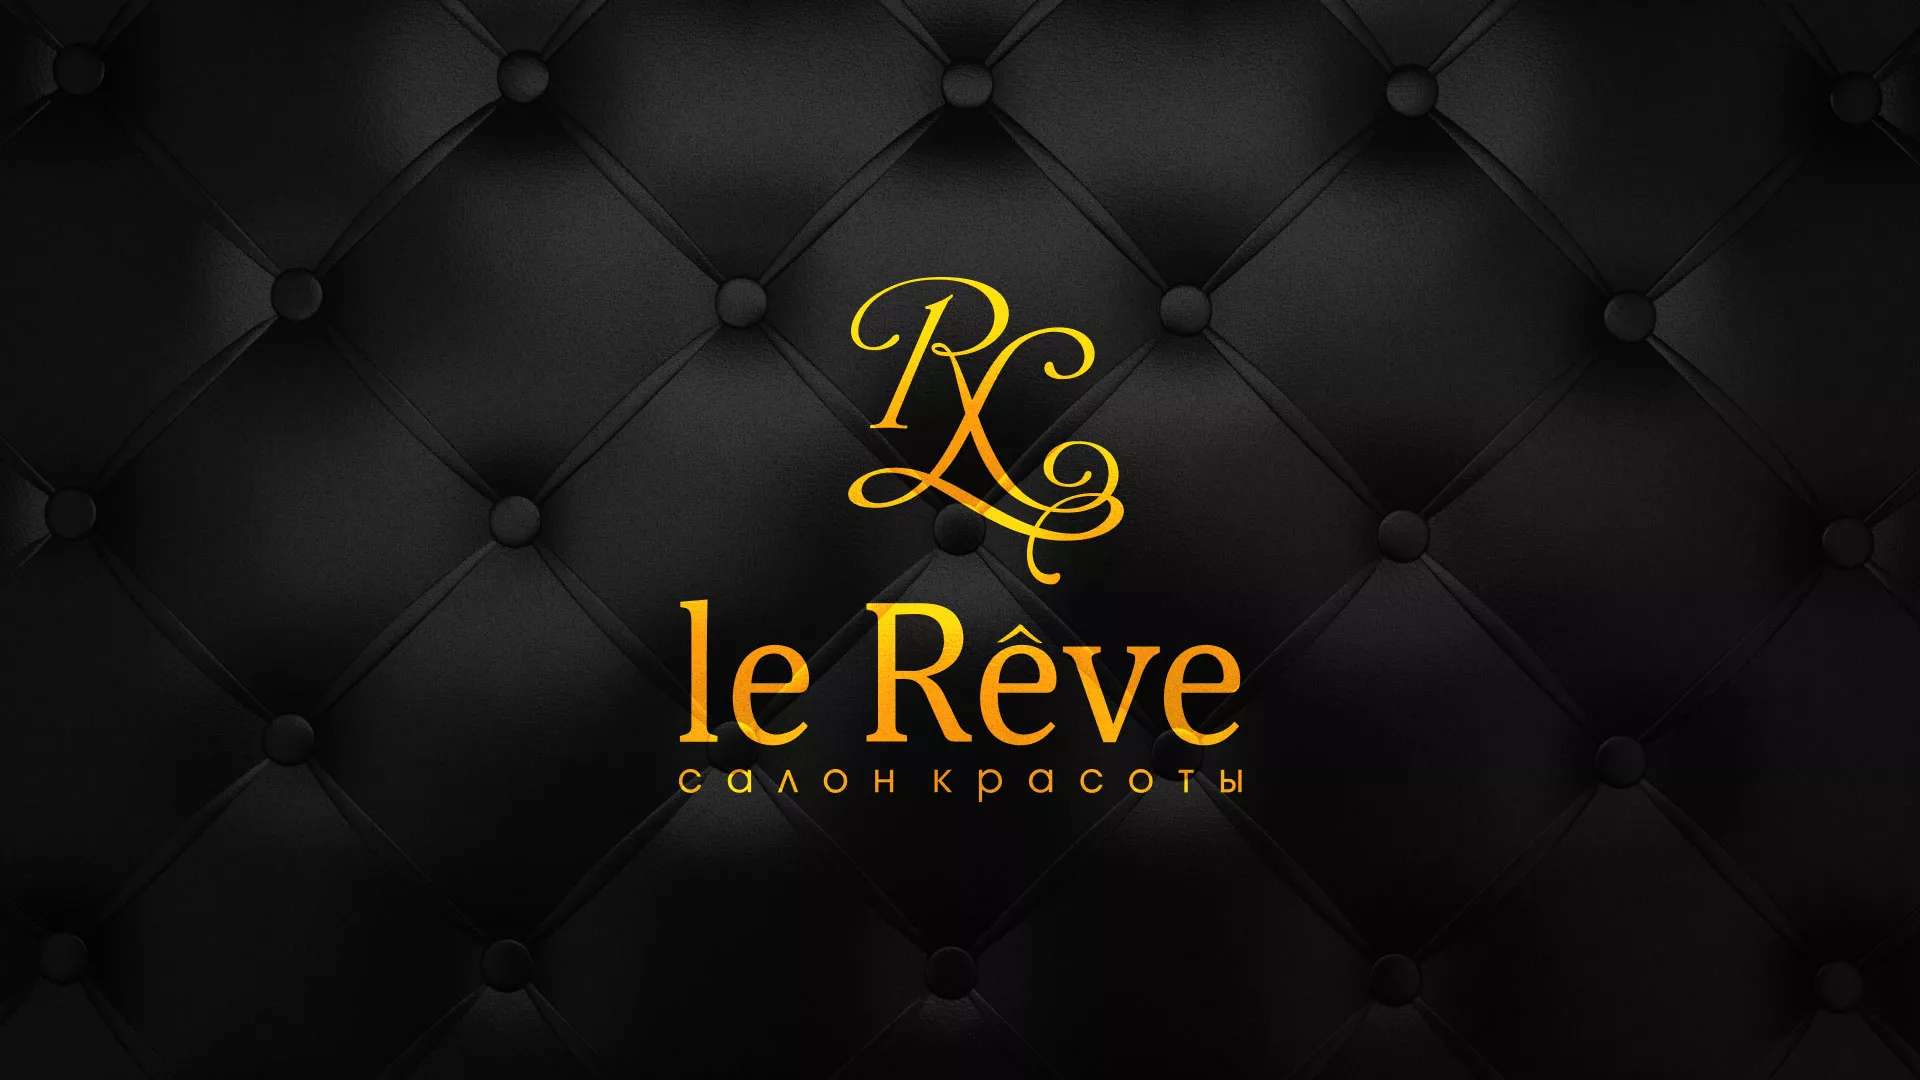 Разработка листовок для салона красоты «Le Reve» в Краснокаменске